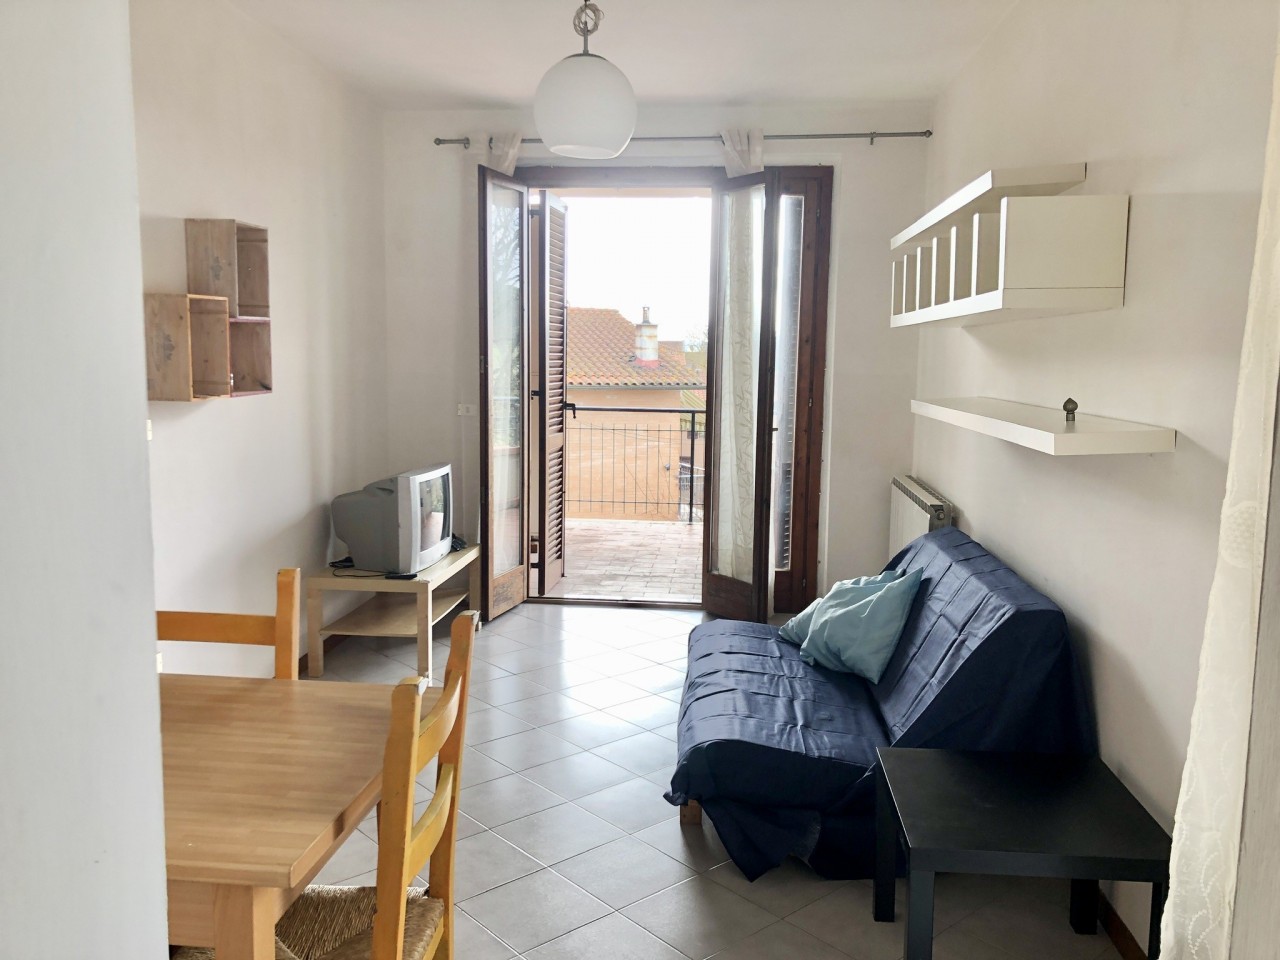 Appartamento in vendita a Monteroni d'Arbia, 4 locali, prezzo € 99.000 | CambioCasa.it